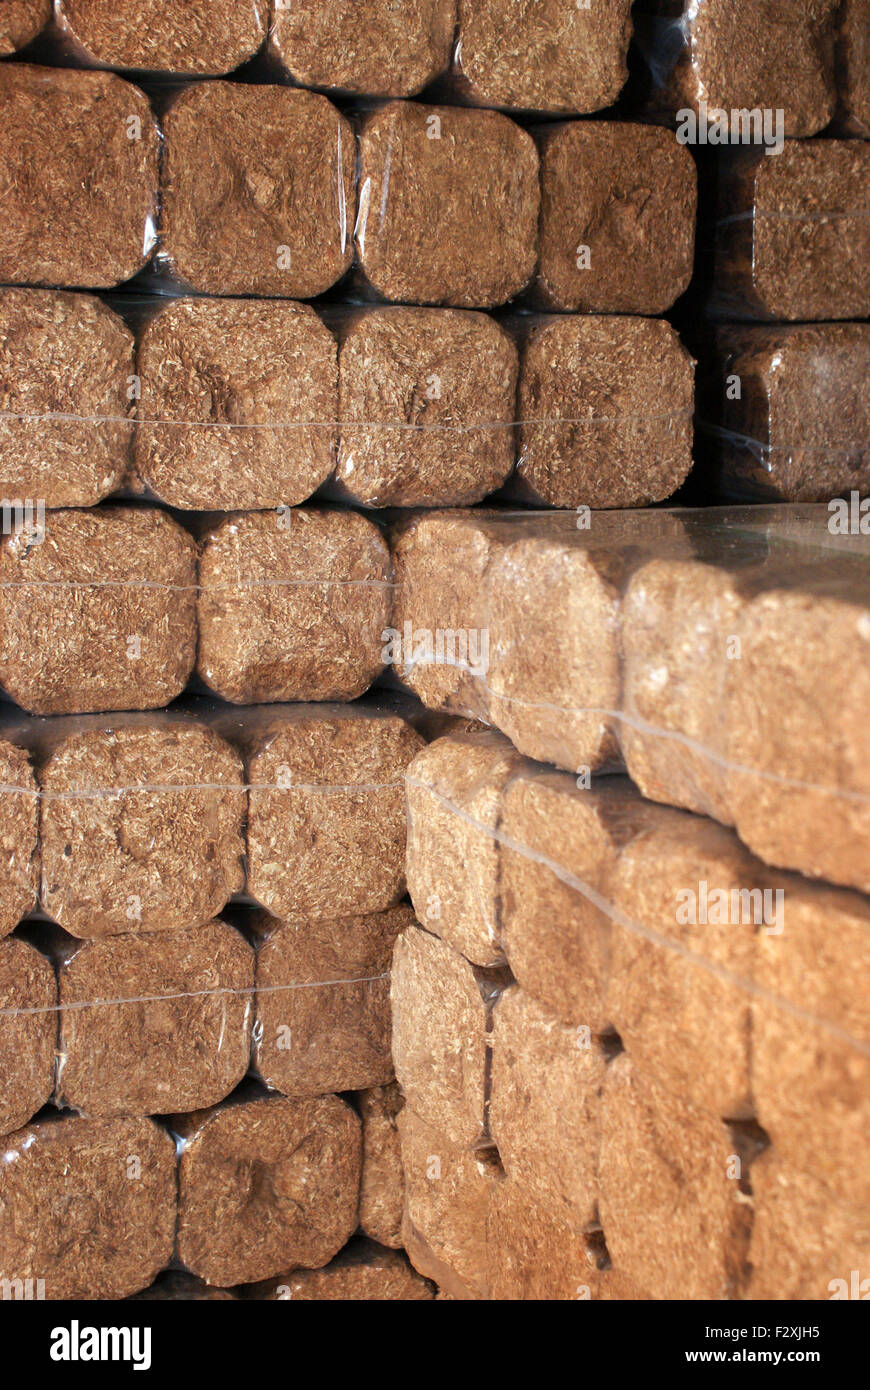 Les briques en bois dur pour le chauffage Photo Stock - Alamy